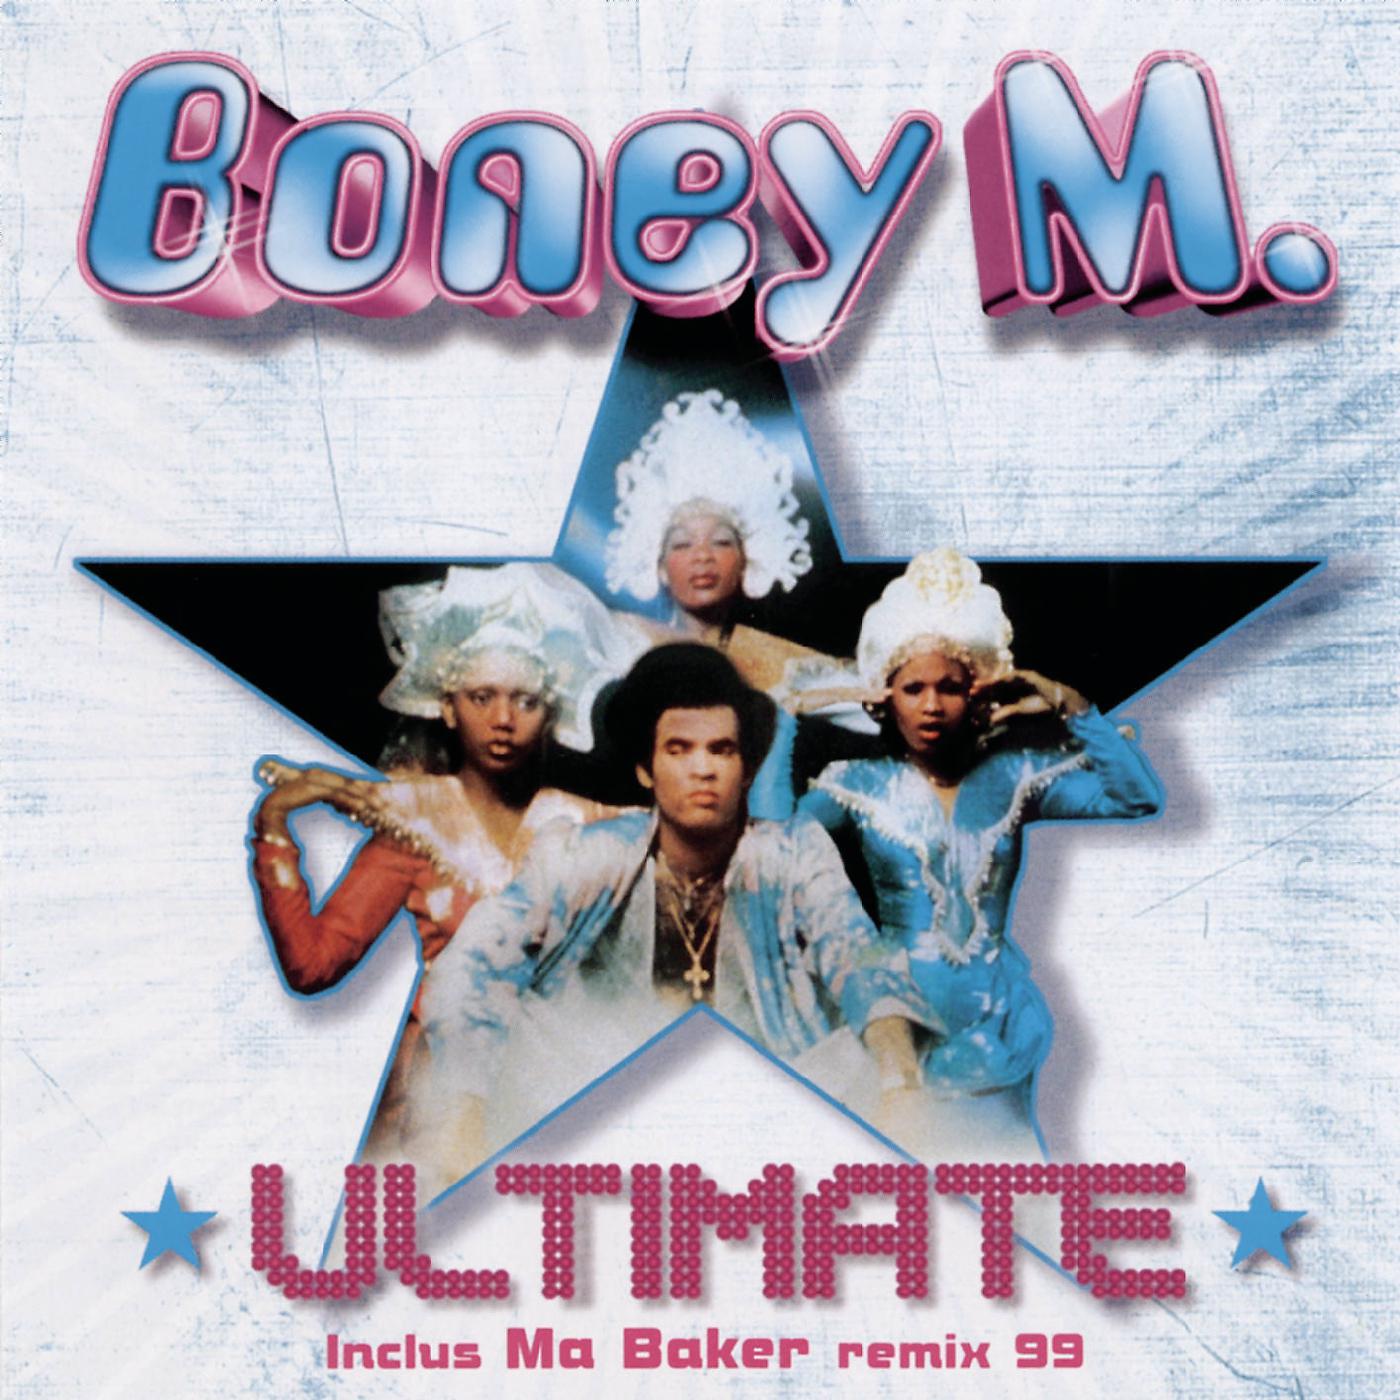 Санни слушать бони. Boney m 1981. Группа Boney m. альбомы. Boney m cd1. Boney m обложка.